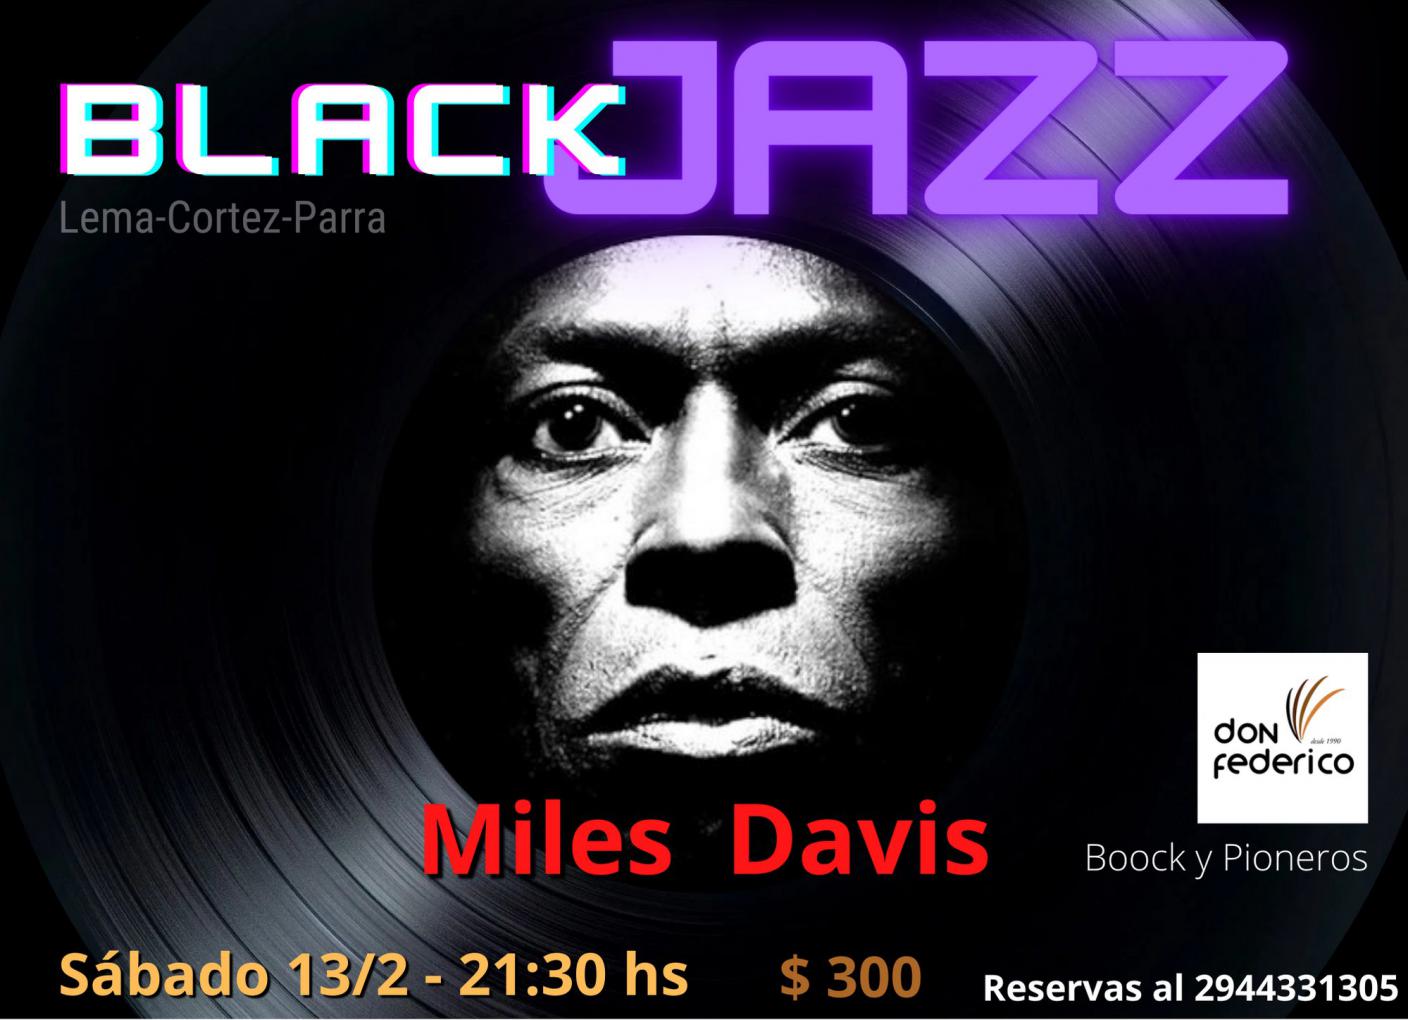 BlackJazz - Miles Davis